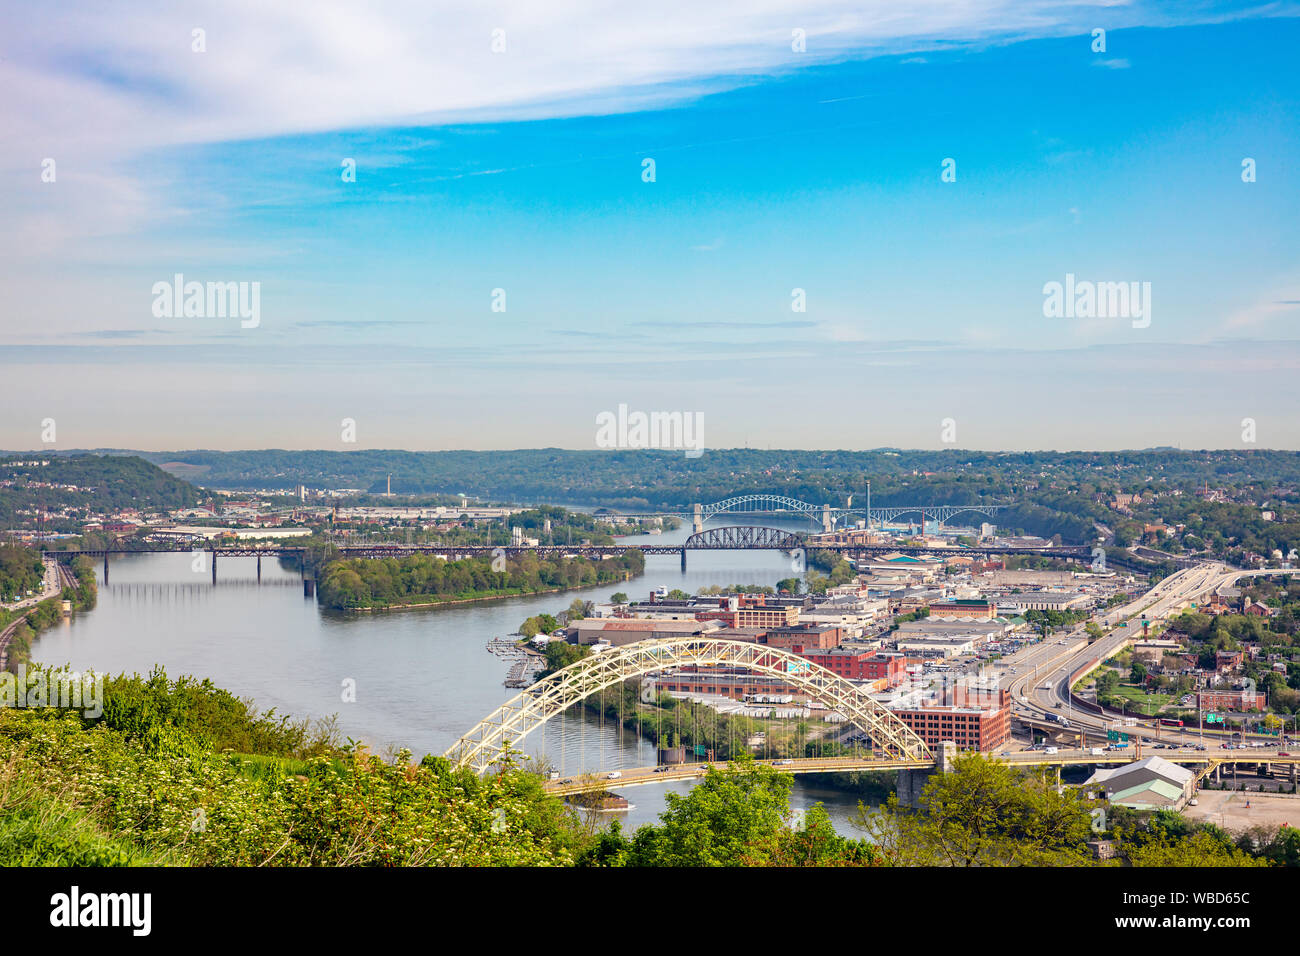 La ville de Pittsburgh downtown Vue aérienne d'un point de vue individuel, journée de printemps ensoleillée. New York, USA Banque D'Images